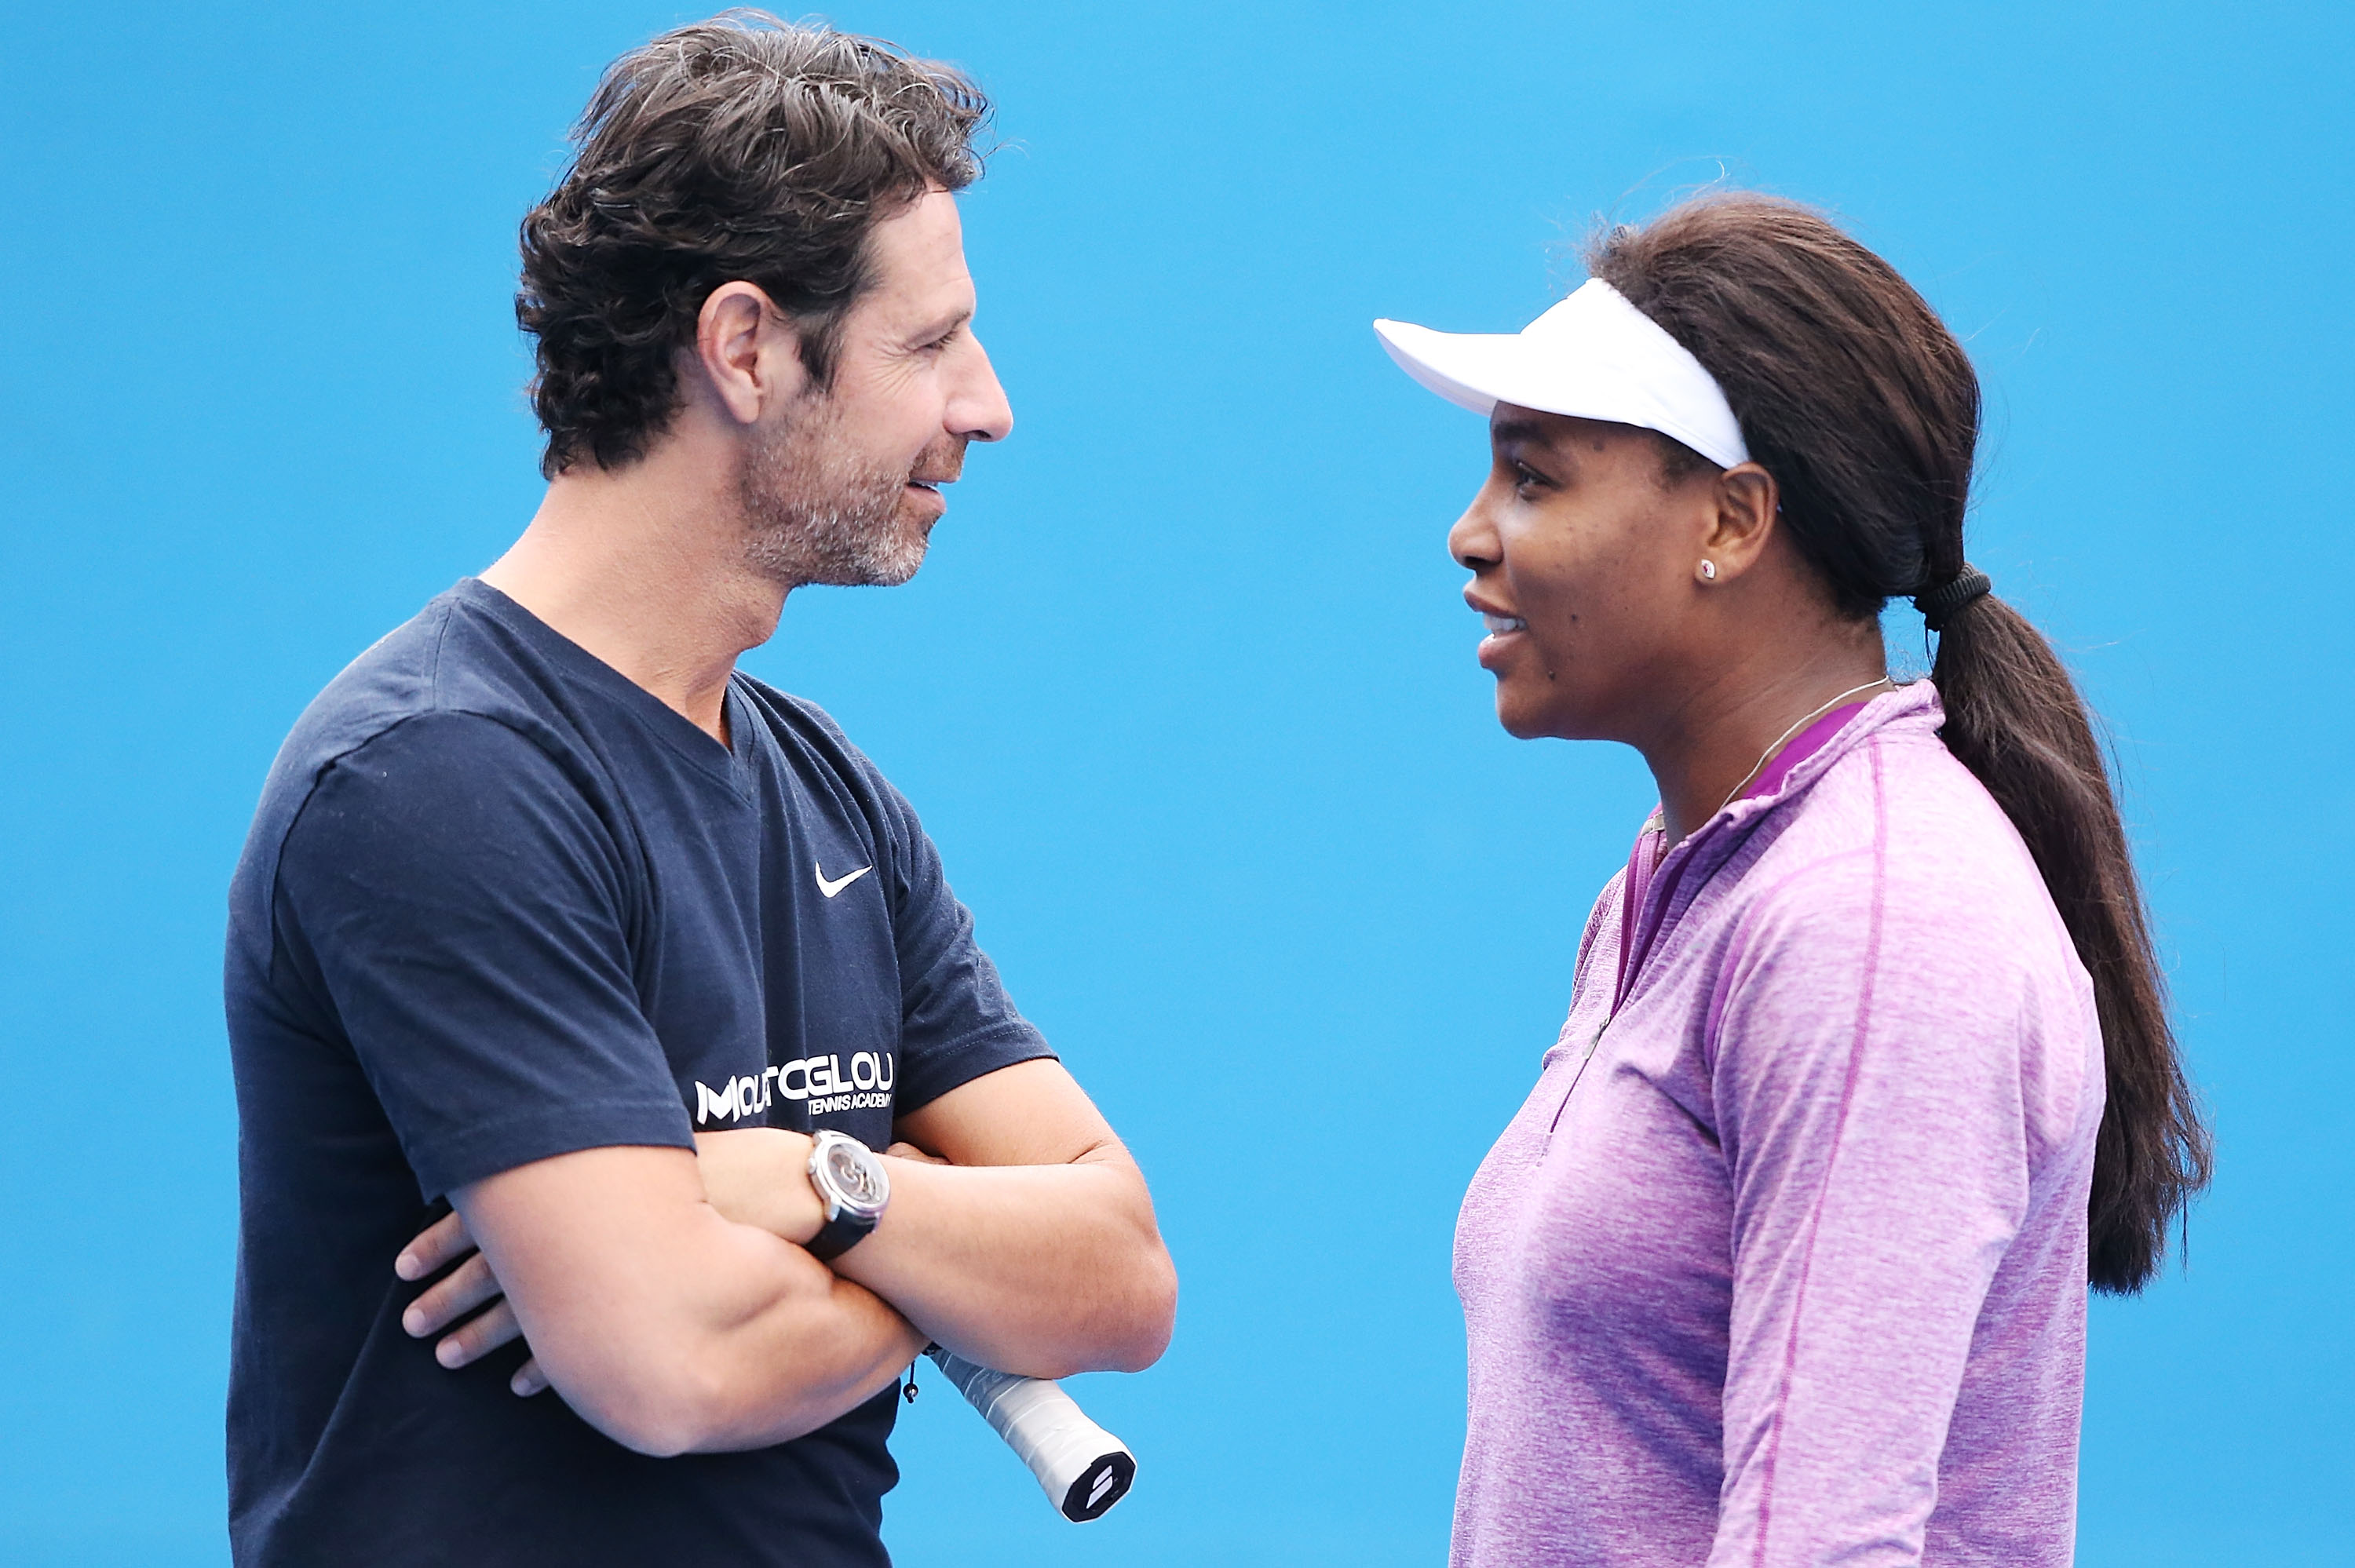 Auto-battezzatosi Dynamic Duo, il team formato da Serena Williams e Patrcik Mouratoglou rappresenta uno dei legami più longevi in quanto a rapporti atleta-coach nel tour Wta